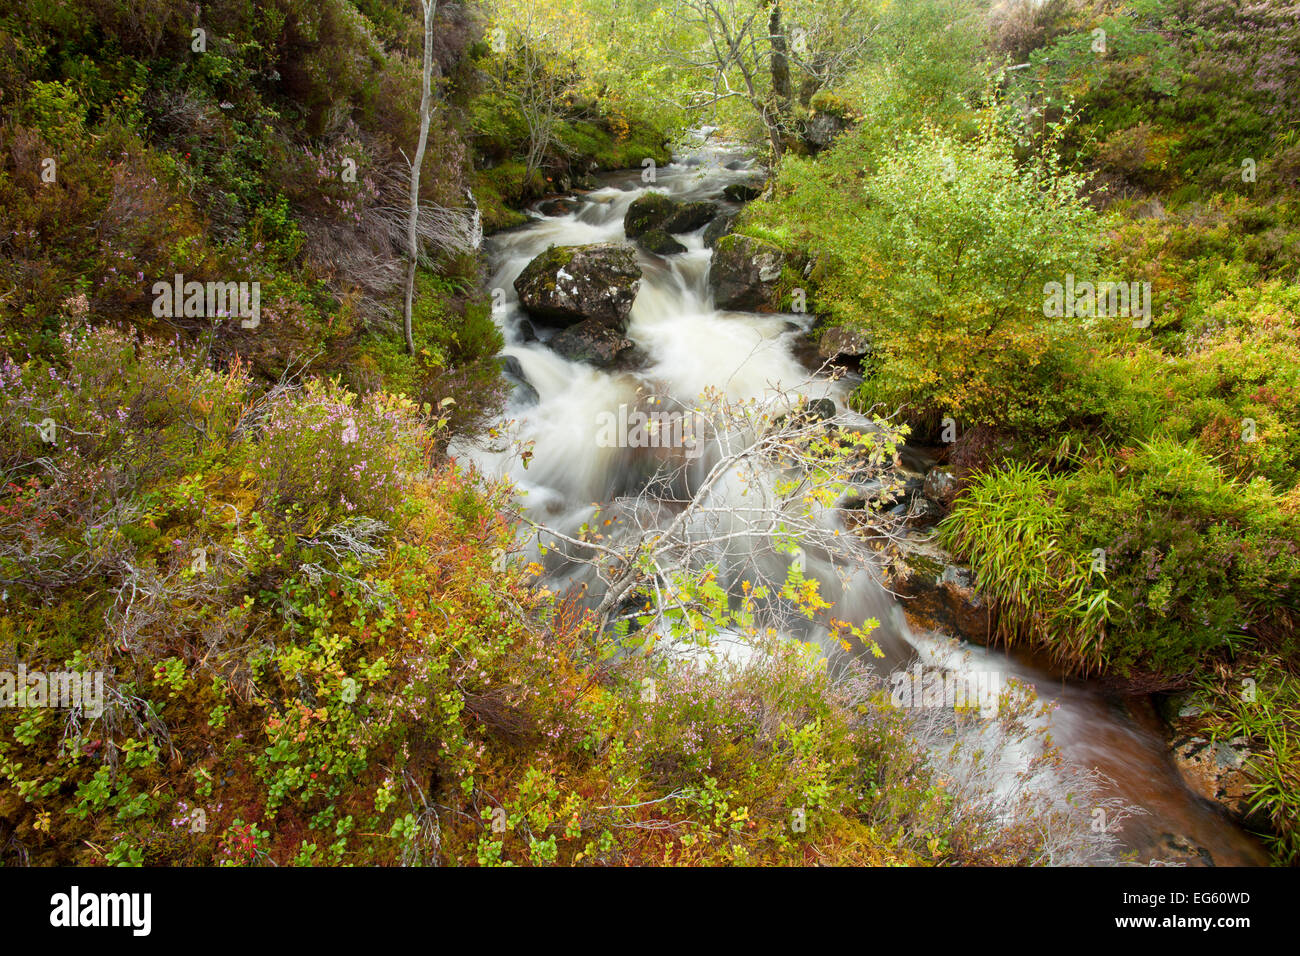 Stream läuft durch bewaldete Schlucht. Abernethy NNR, Cairngorms National Park, Schottland, UK, September 2011. Wussten Sie schon? Abernethy Forest ist der größte Überbleibsel der alten Kaledonischen Wald in Schottland. Stockfoto